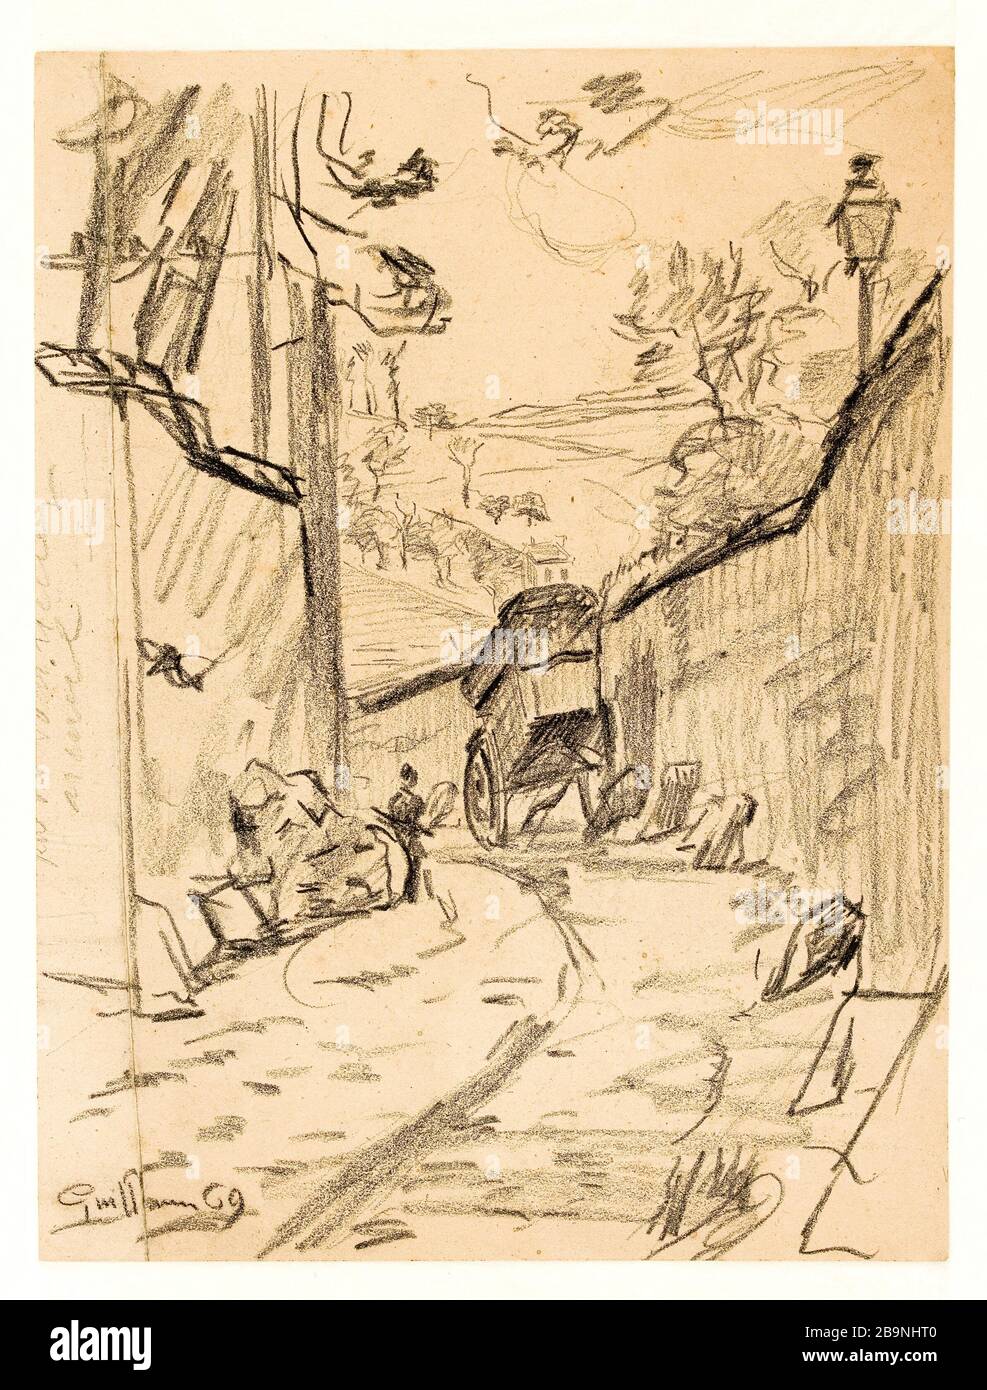 CART IN A LANE ROTATING (ARCUEIL) Armand Guillaumin (1841-1927). 'Charrette dans une ruelle tournante (Arcueil)'. Crayon noir sur papier fort, 1869. Musée des Beaux-Arts de la Ville de Paris, Petit Palais. Stock Photo